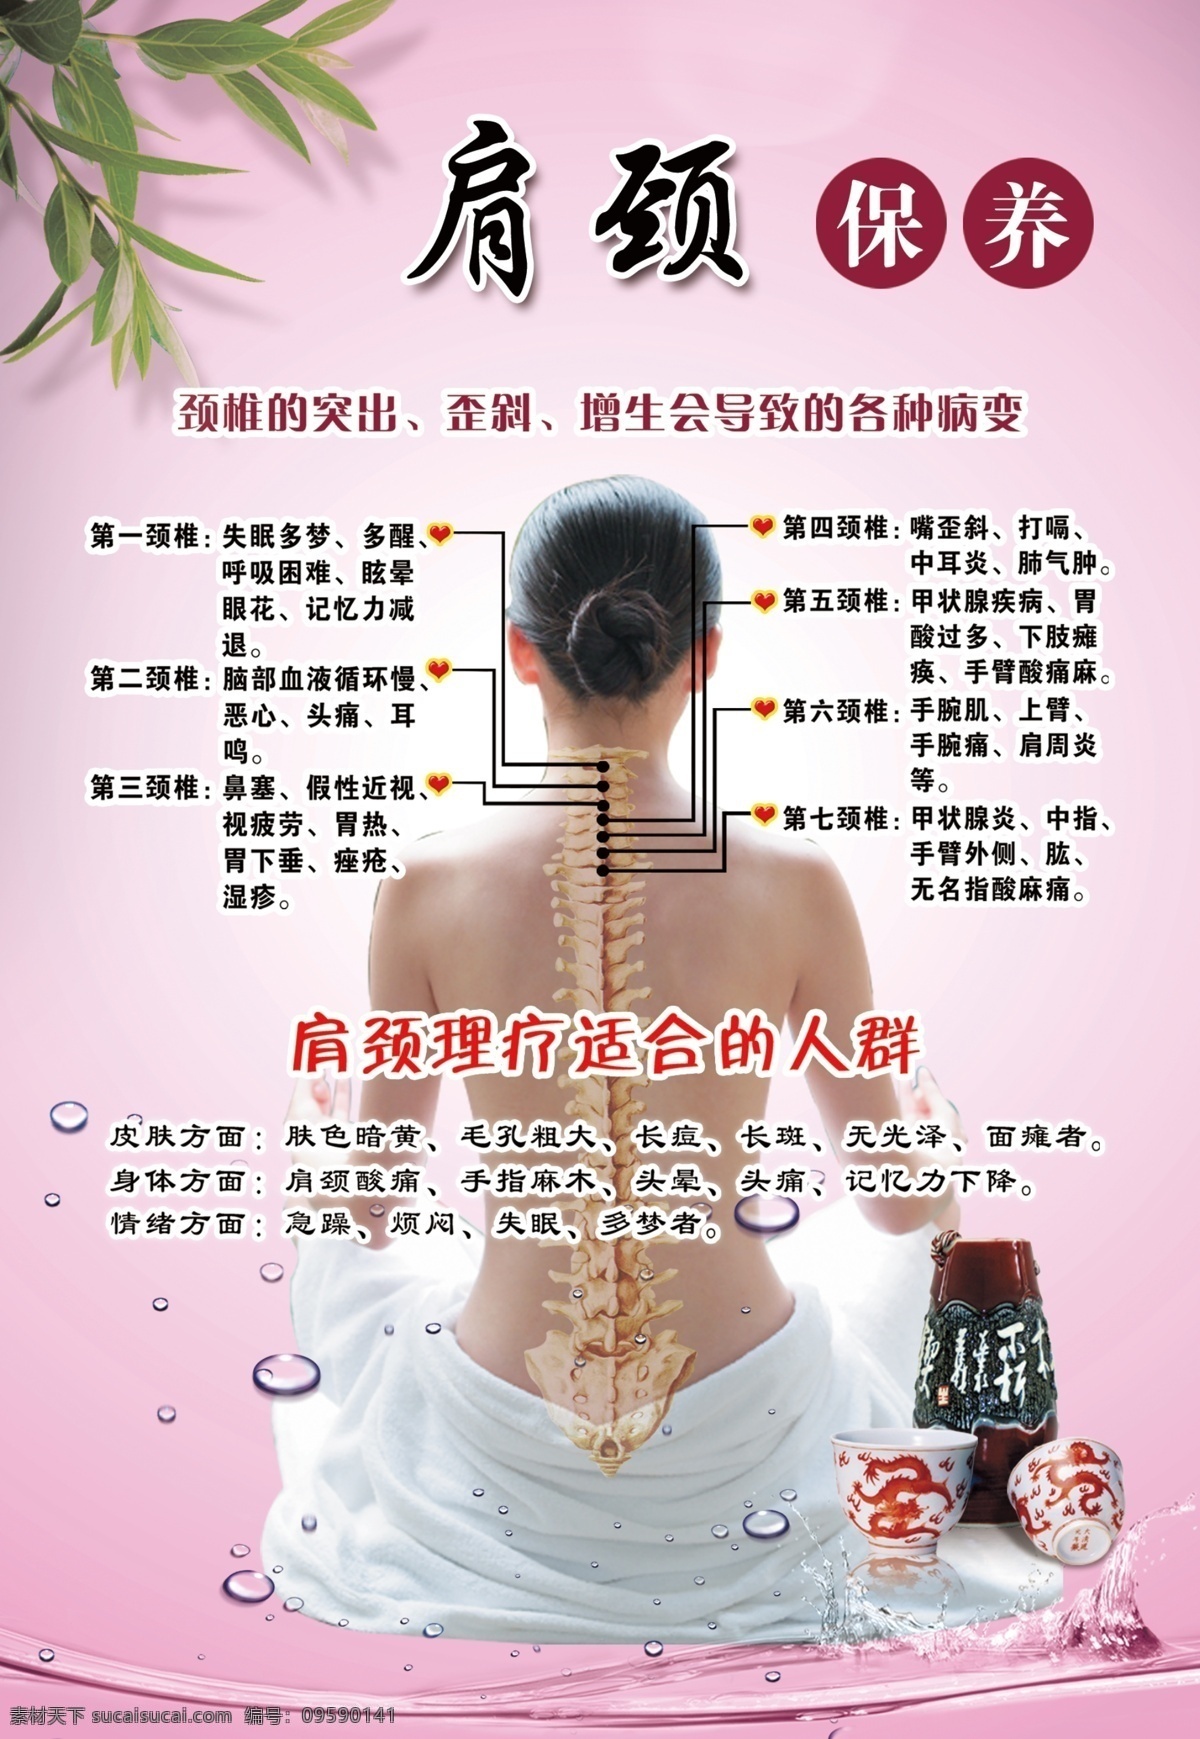 肩颈理疗 中医 艾灸 肩颈美容 穴位 指示 调理 中医模特 中国风 腰椎舒缓 中医招牌